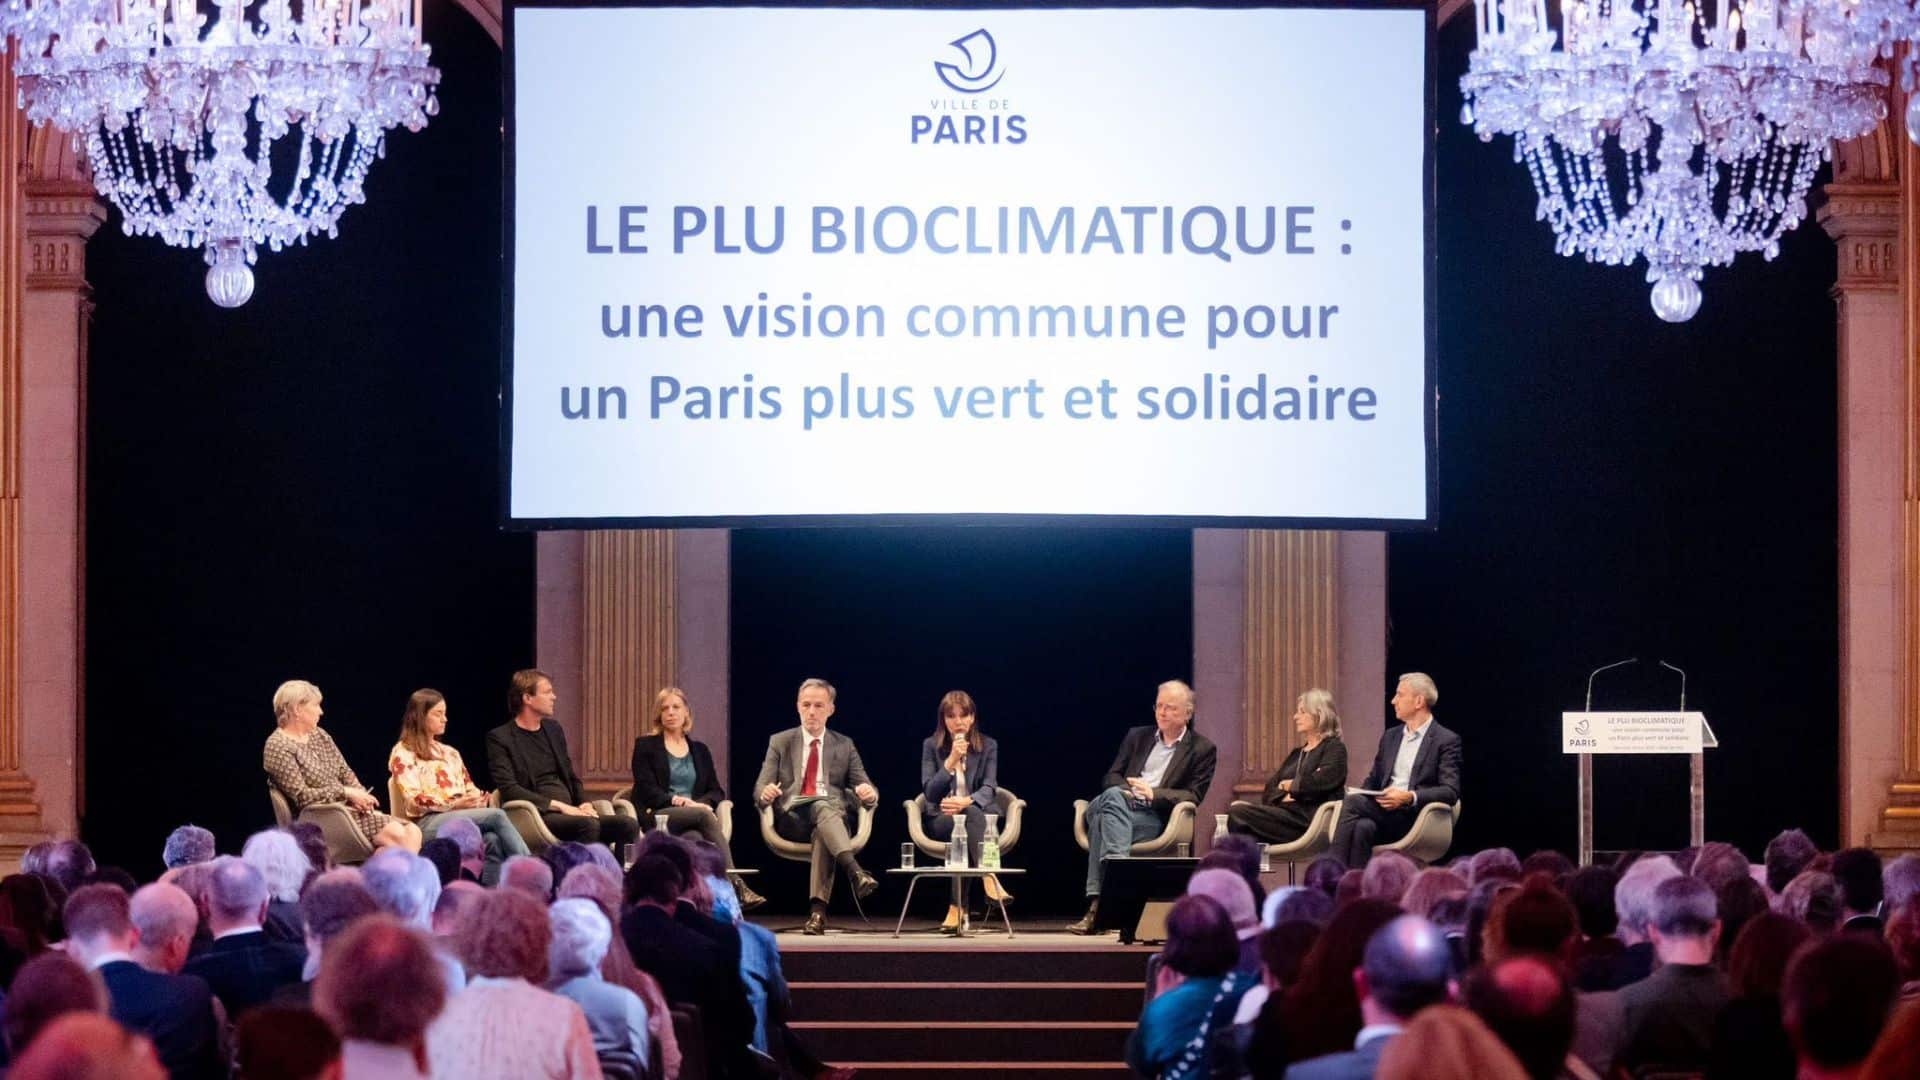 Paris, PLU Bioclimatique